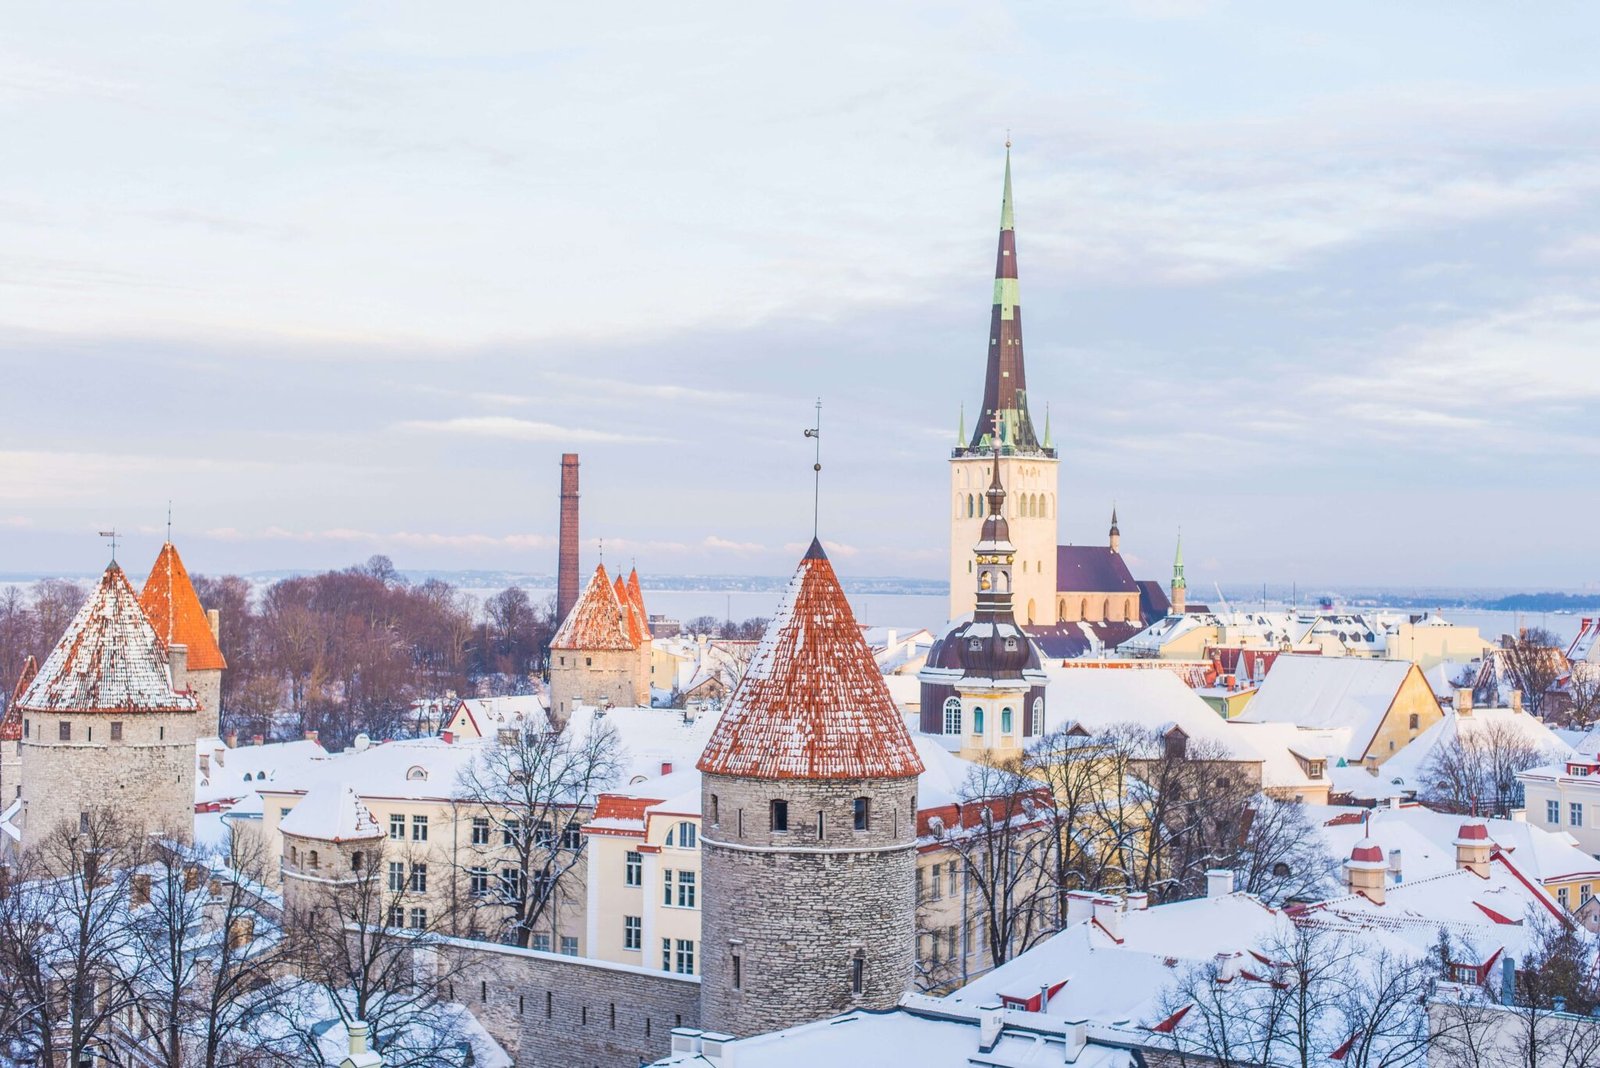 Tallinn, winter bucket list destinations